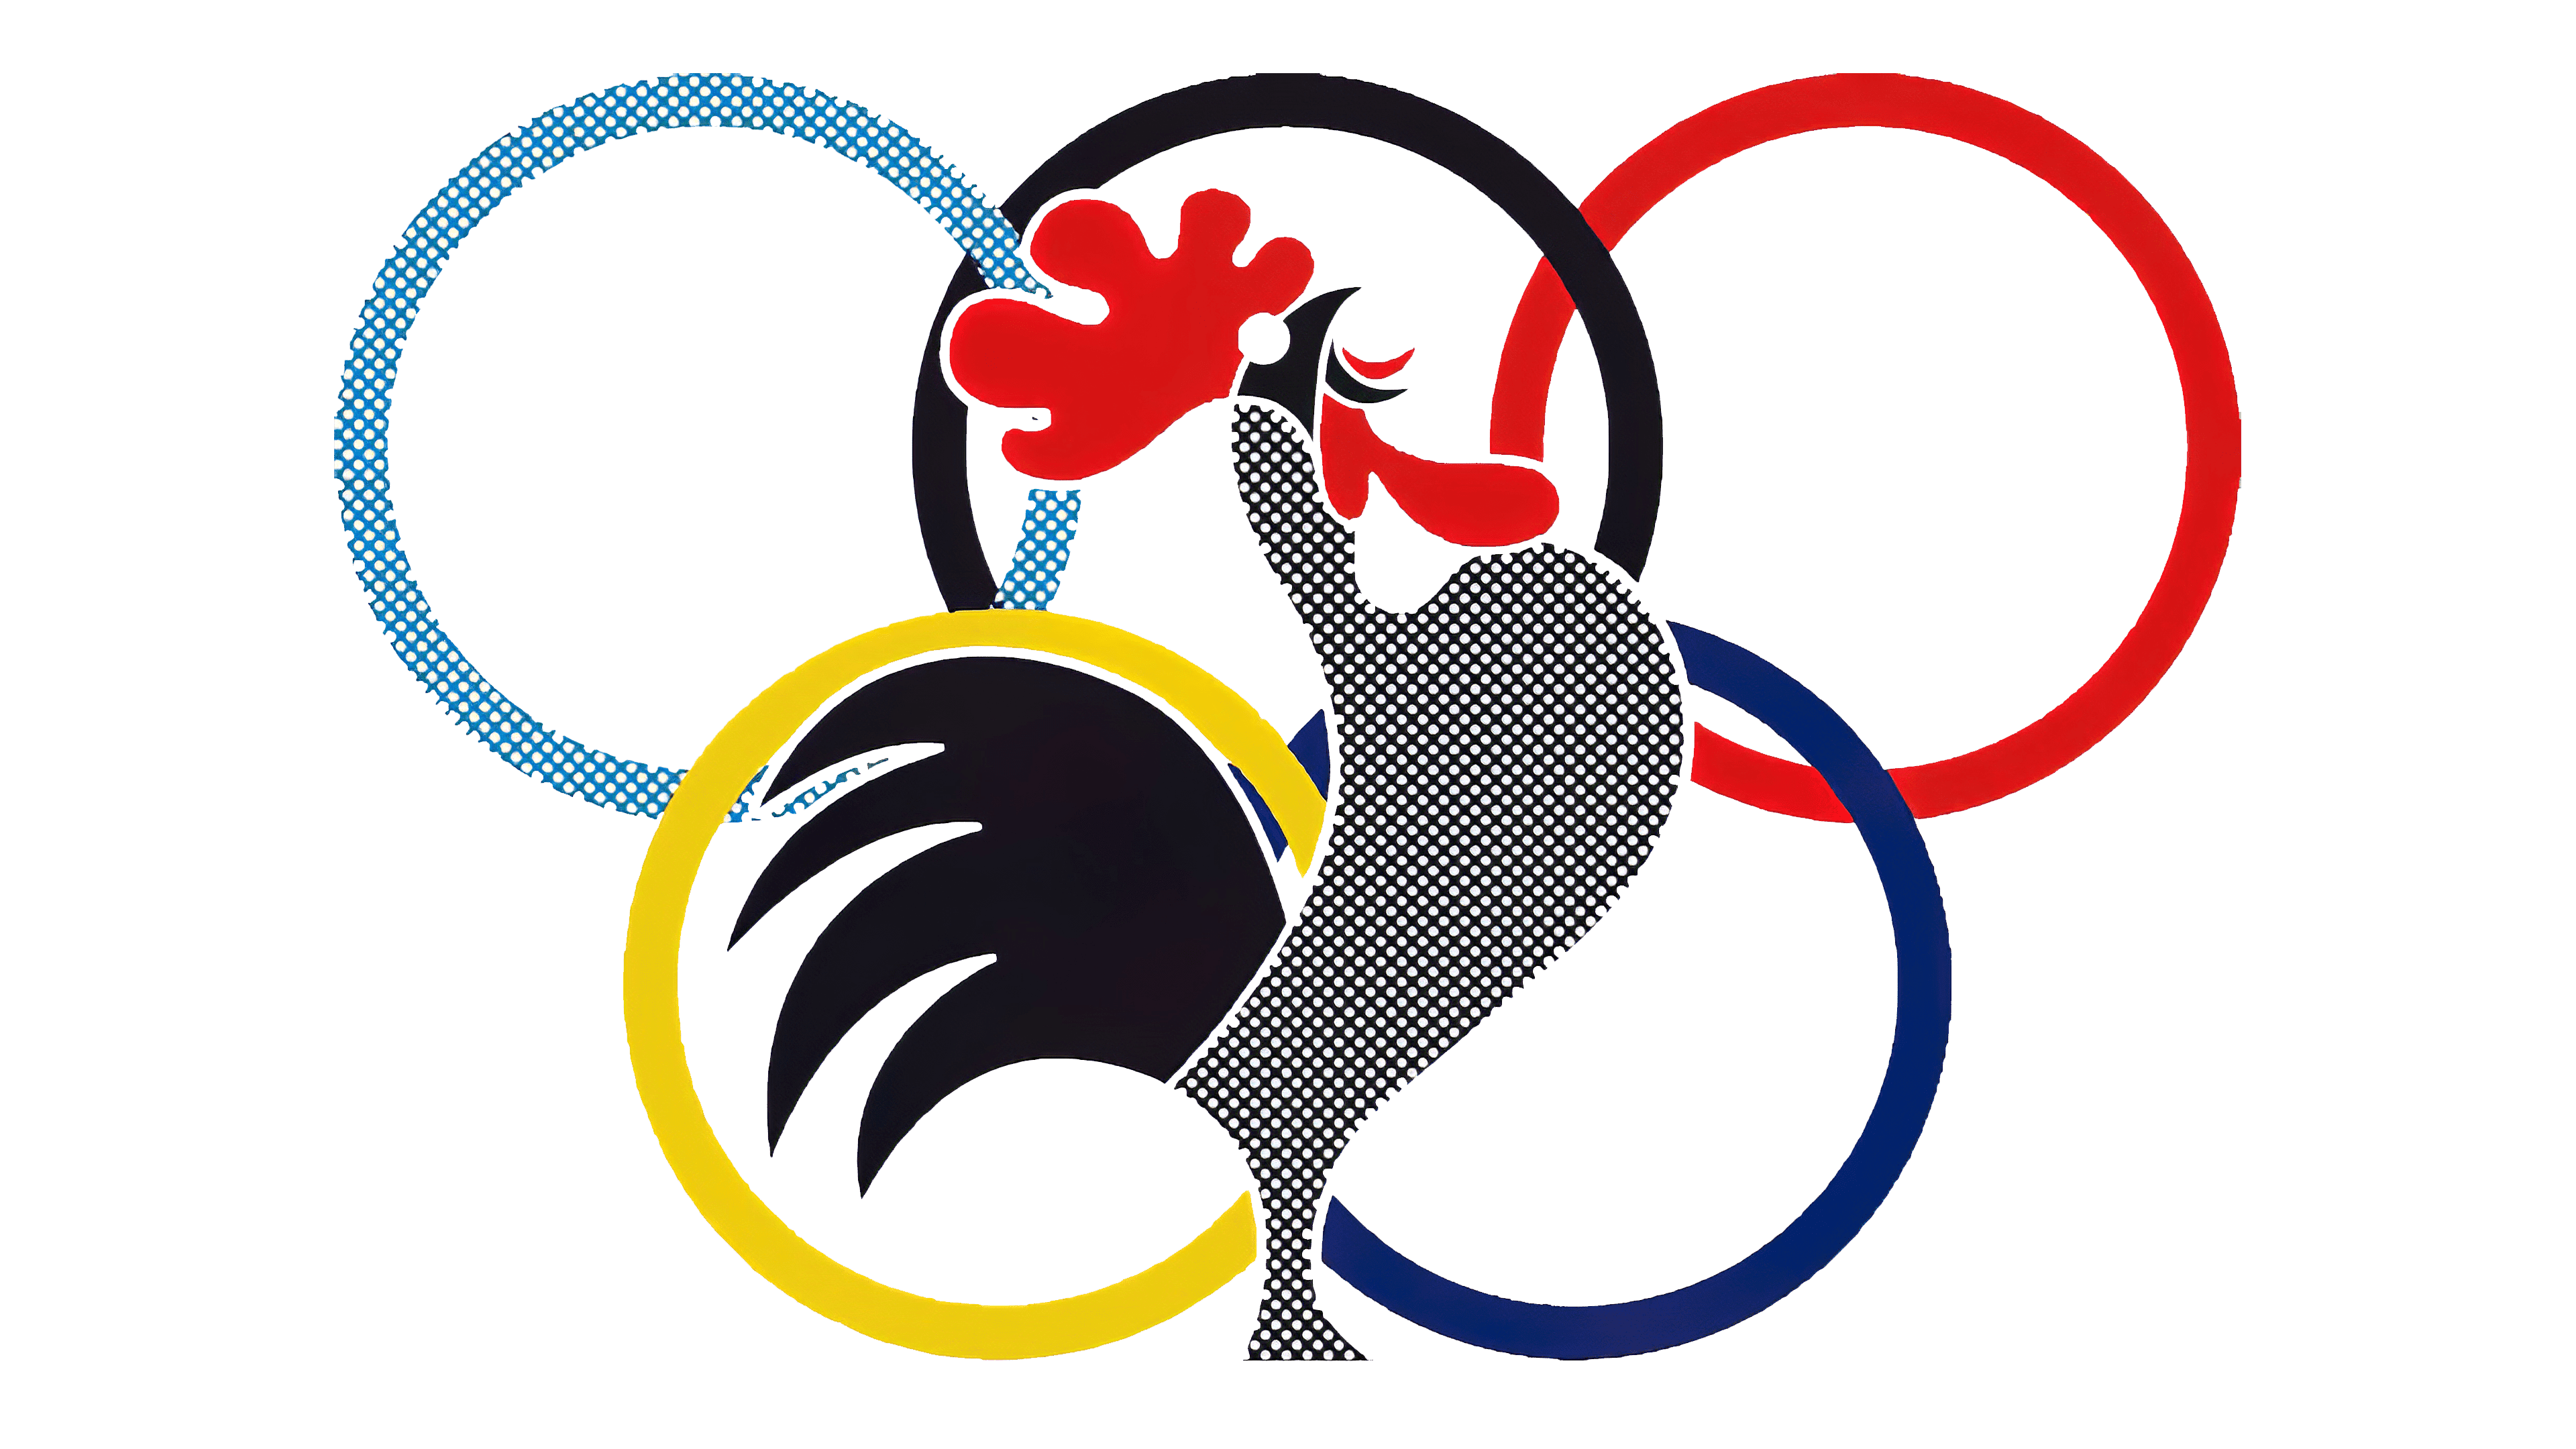 Logo Lecoq Sportif | vlr.eng.br